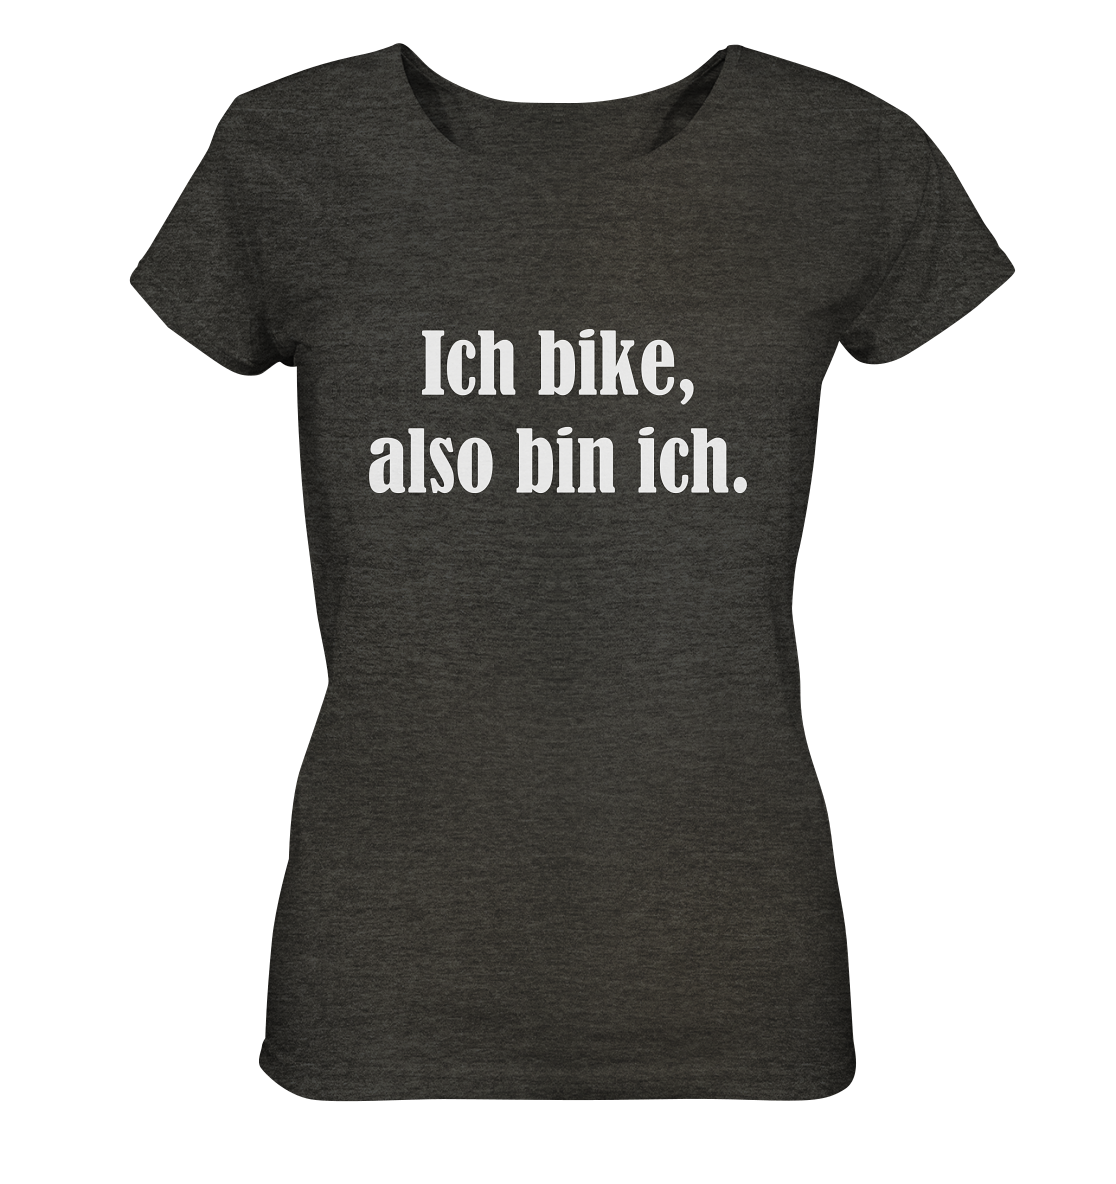 T-Shirt, Damen, Rundhals, mit weißem Aufdruck "Ich bike, also bin ich", dunkel grau meliert